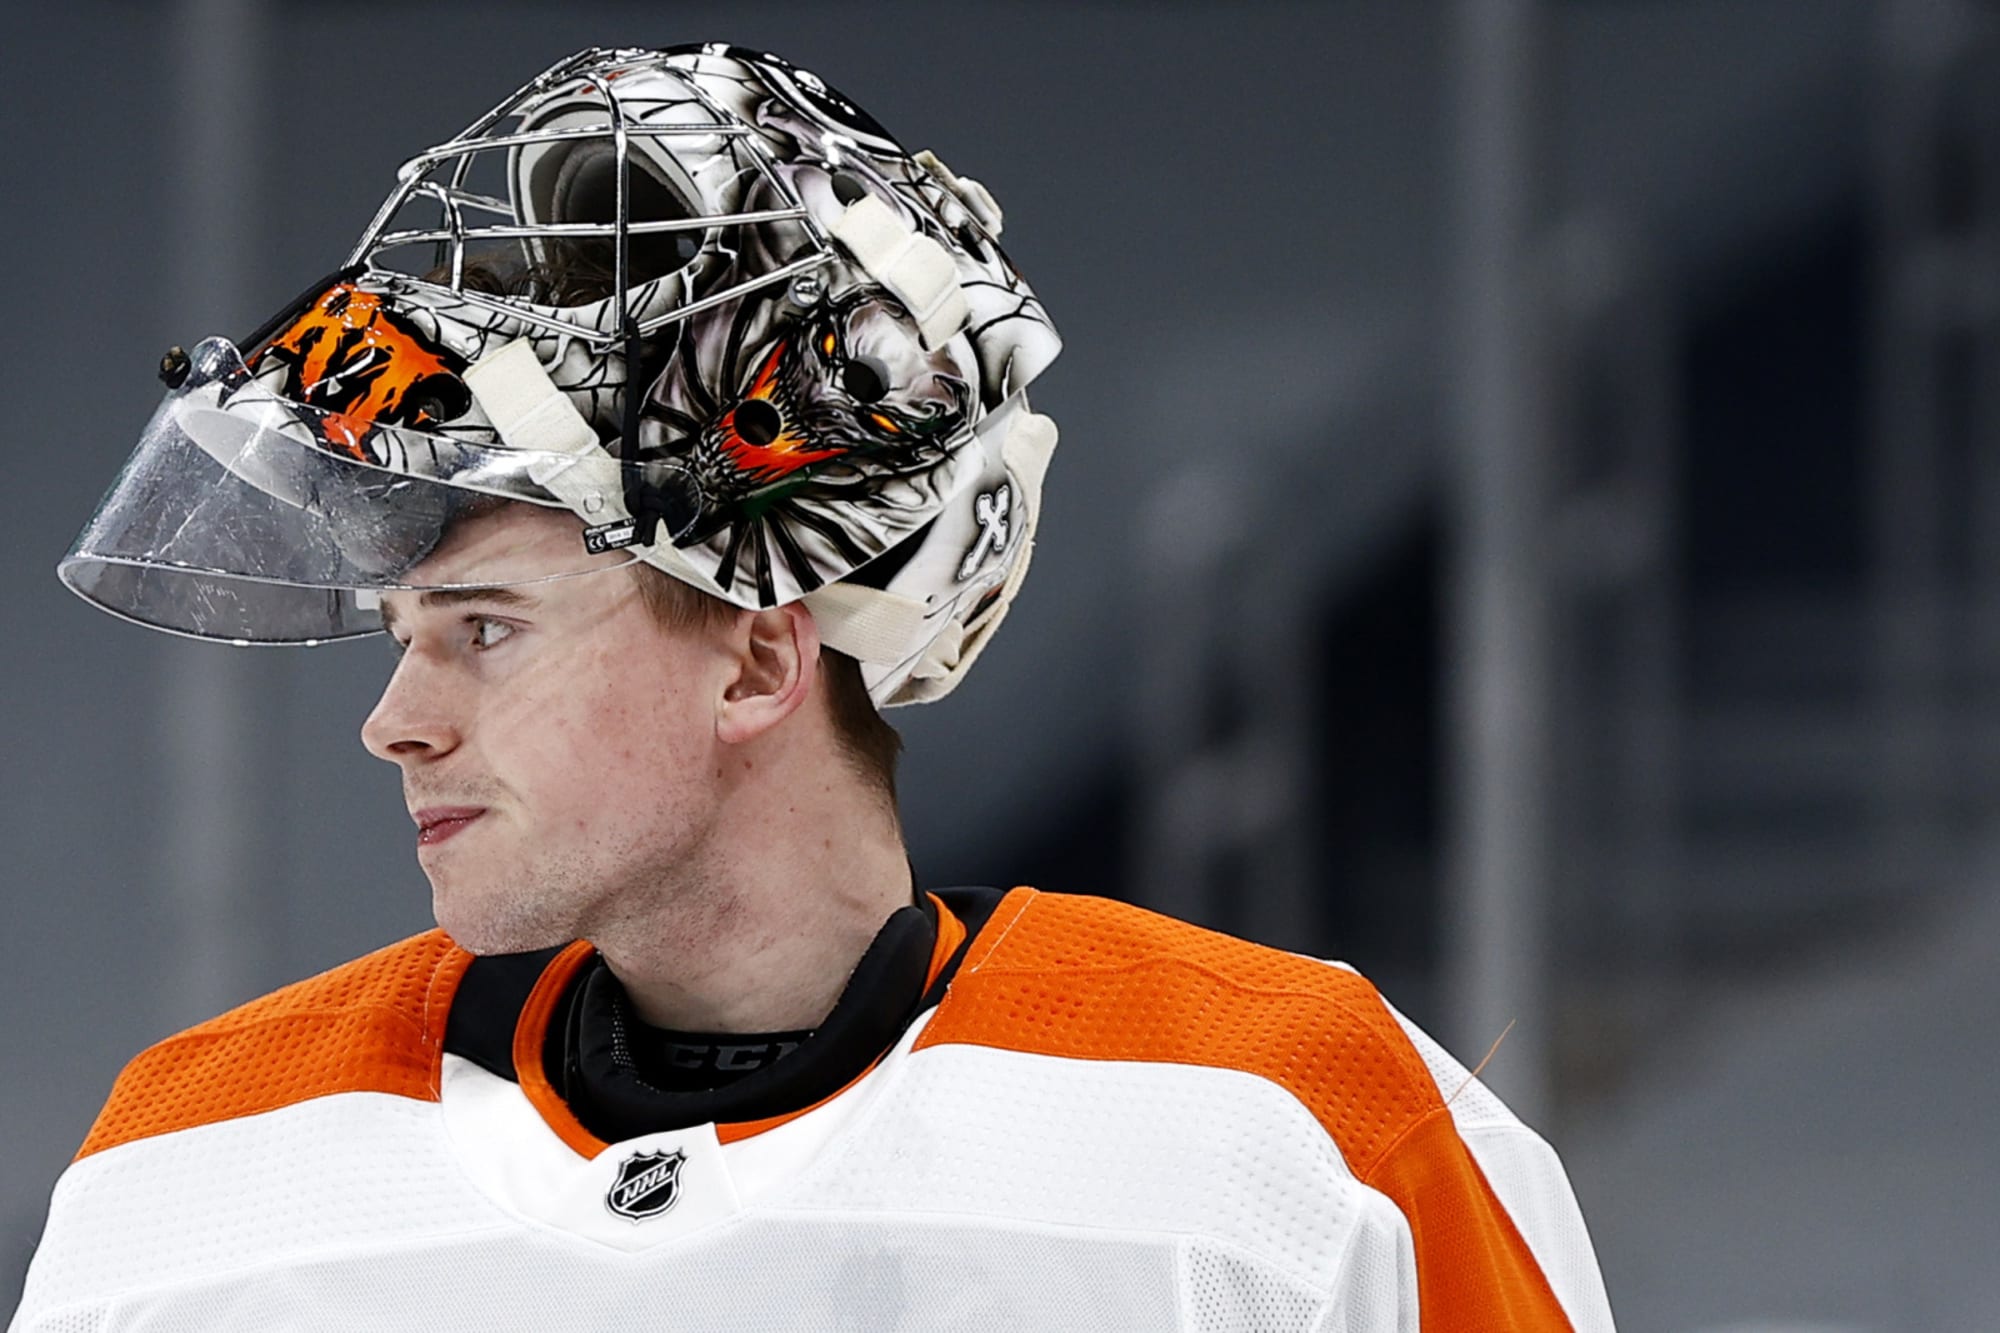 NHL - Philadelphia Flyers goalie prospect Carter Hart pushing for